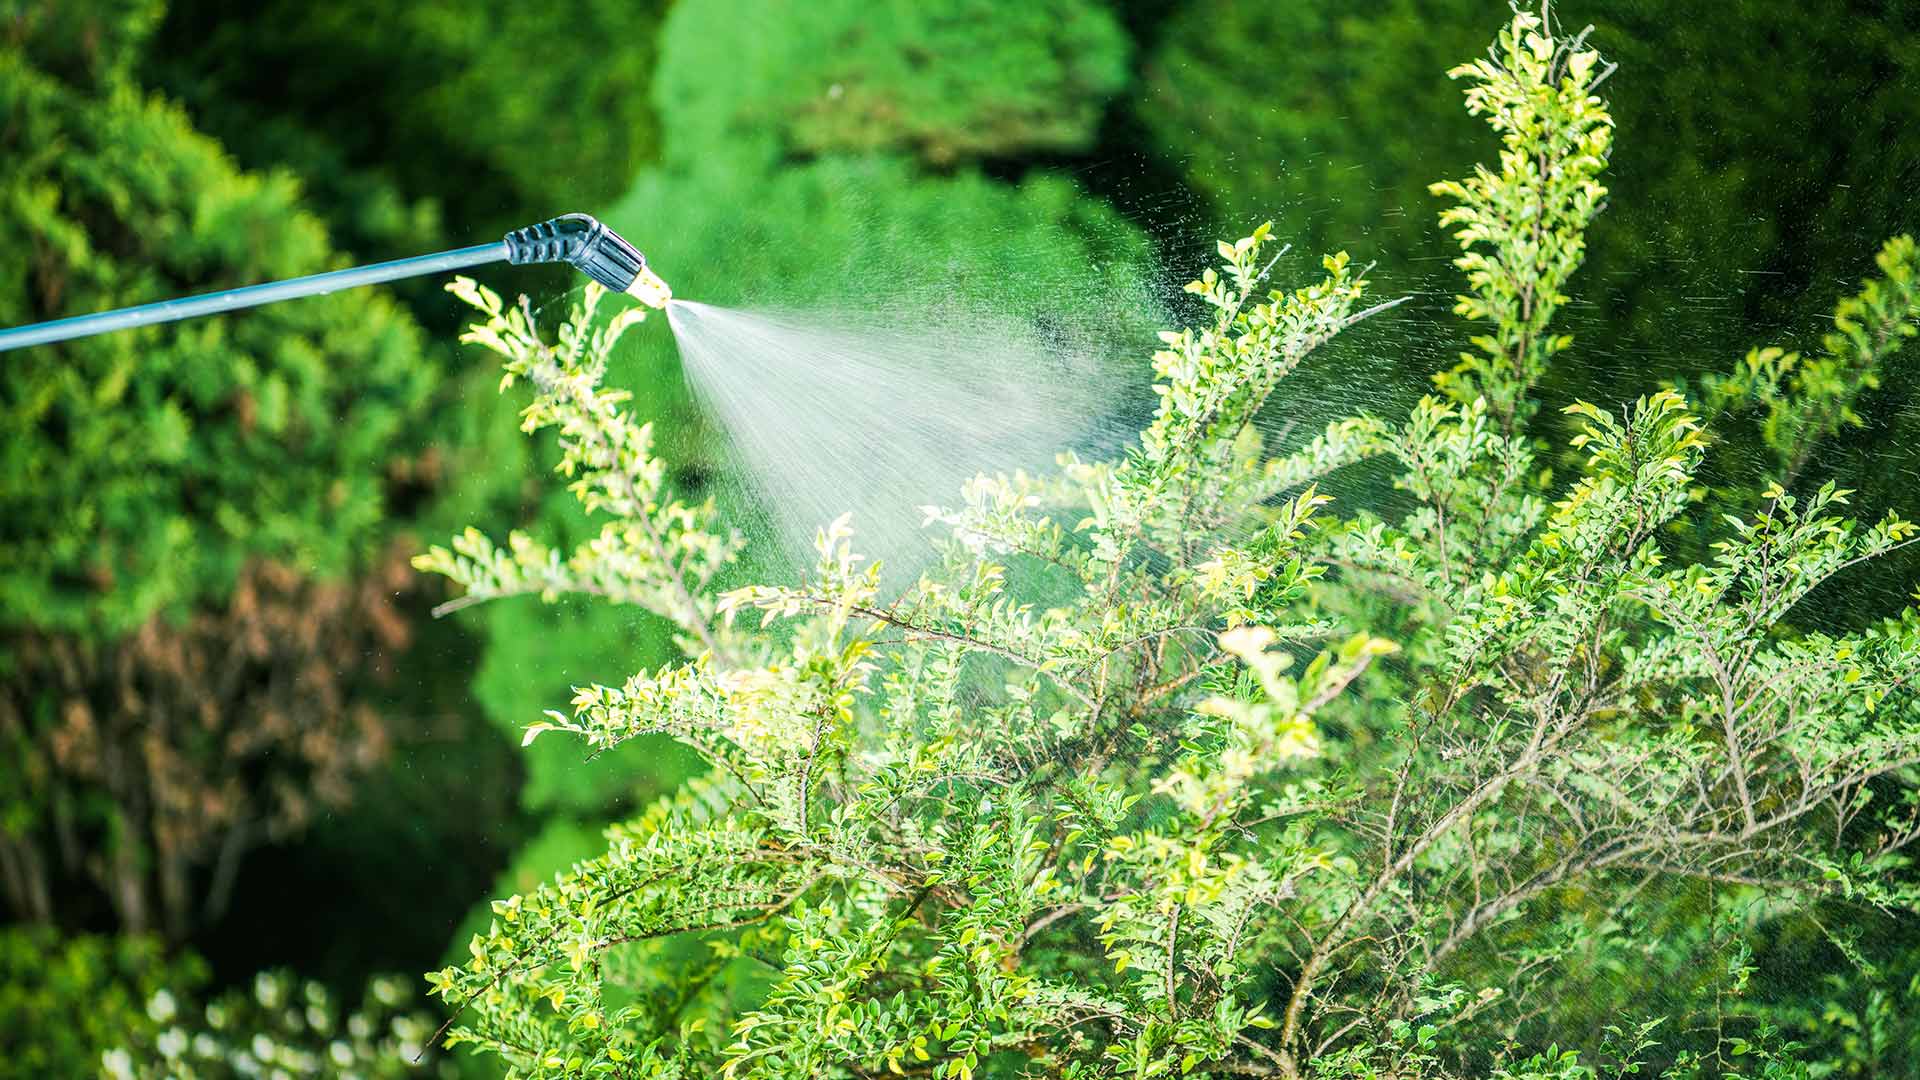 Spraying a shrub with liquid fertilizer near The Villages, FL.